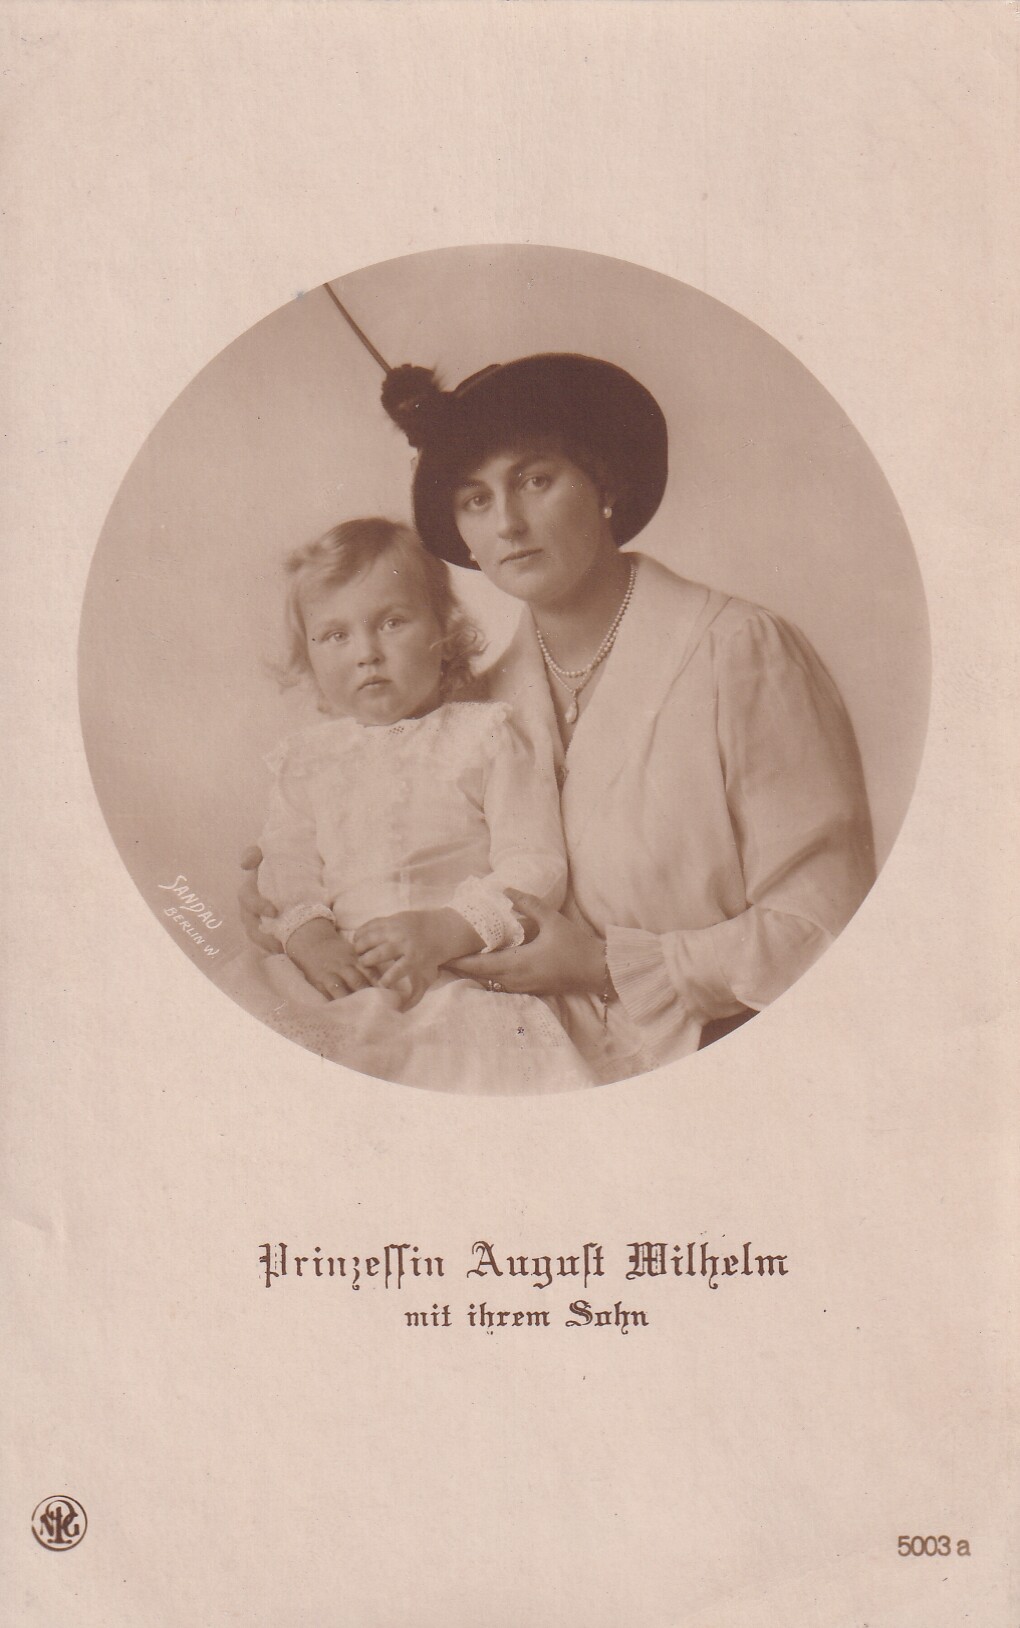 Bildpostkarte mit Foto der Prinzessin Alexandra Viktoria von Preußen mit ihrem Sohn, 1914 (Schloß Wernigerode GmbH RR-F)